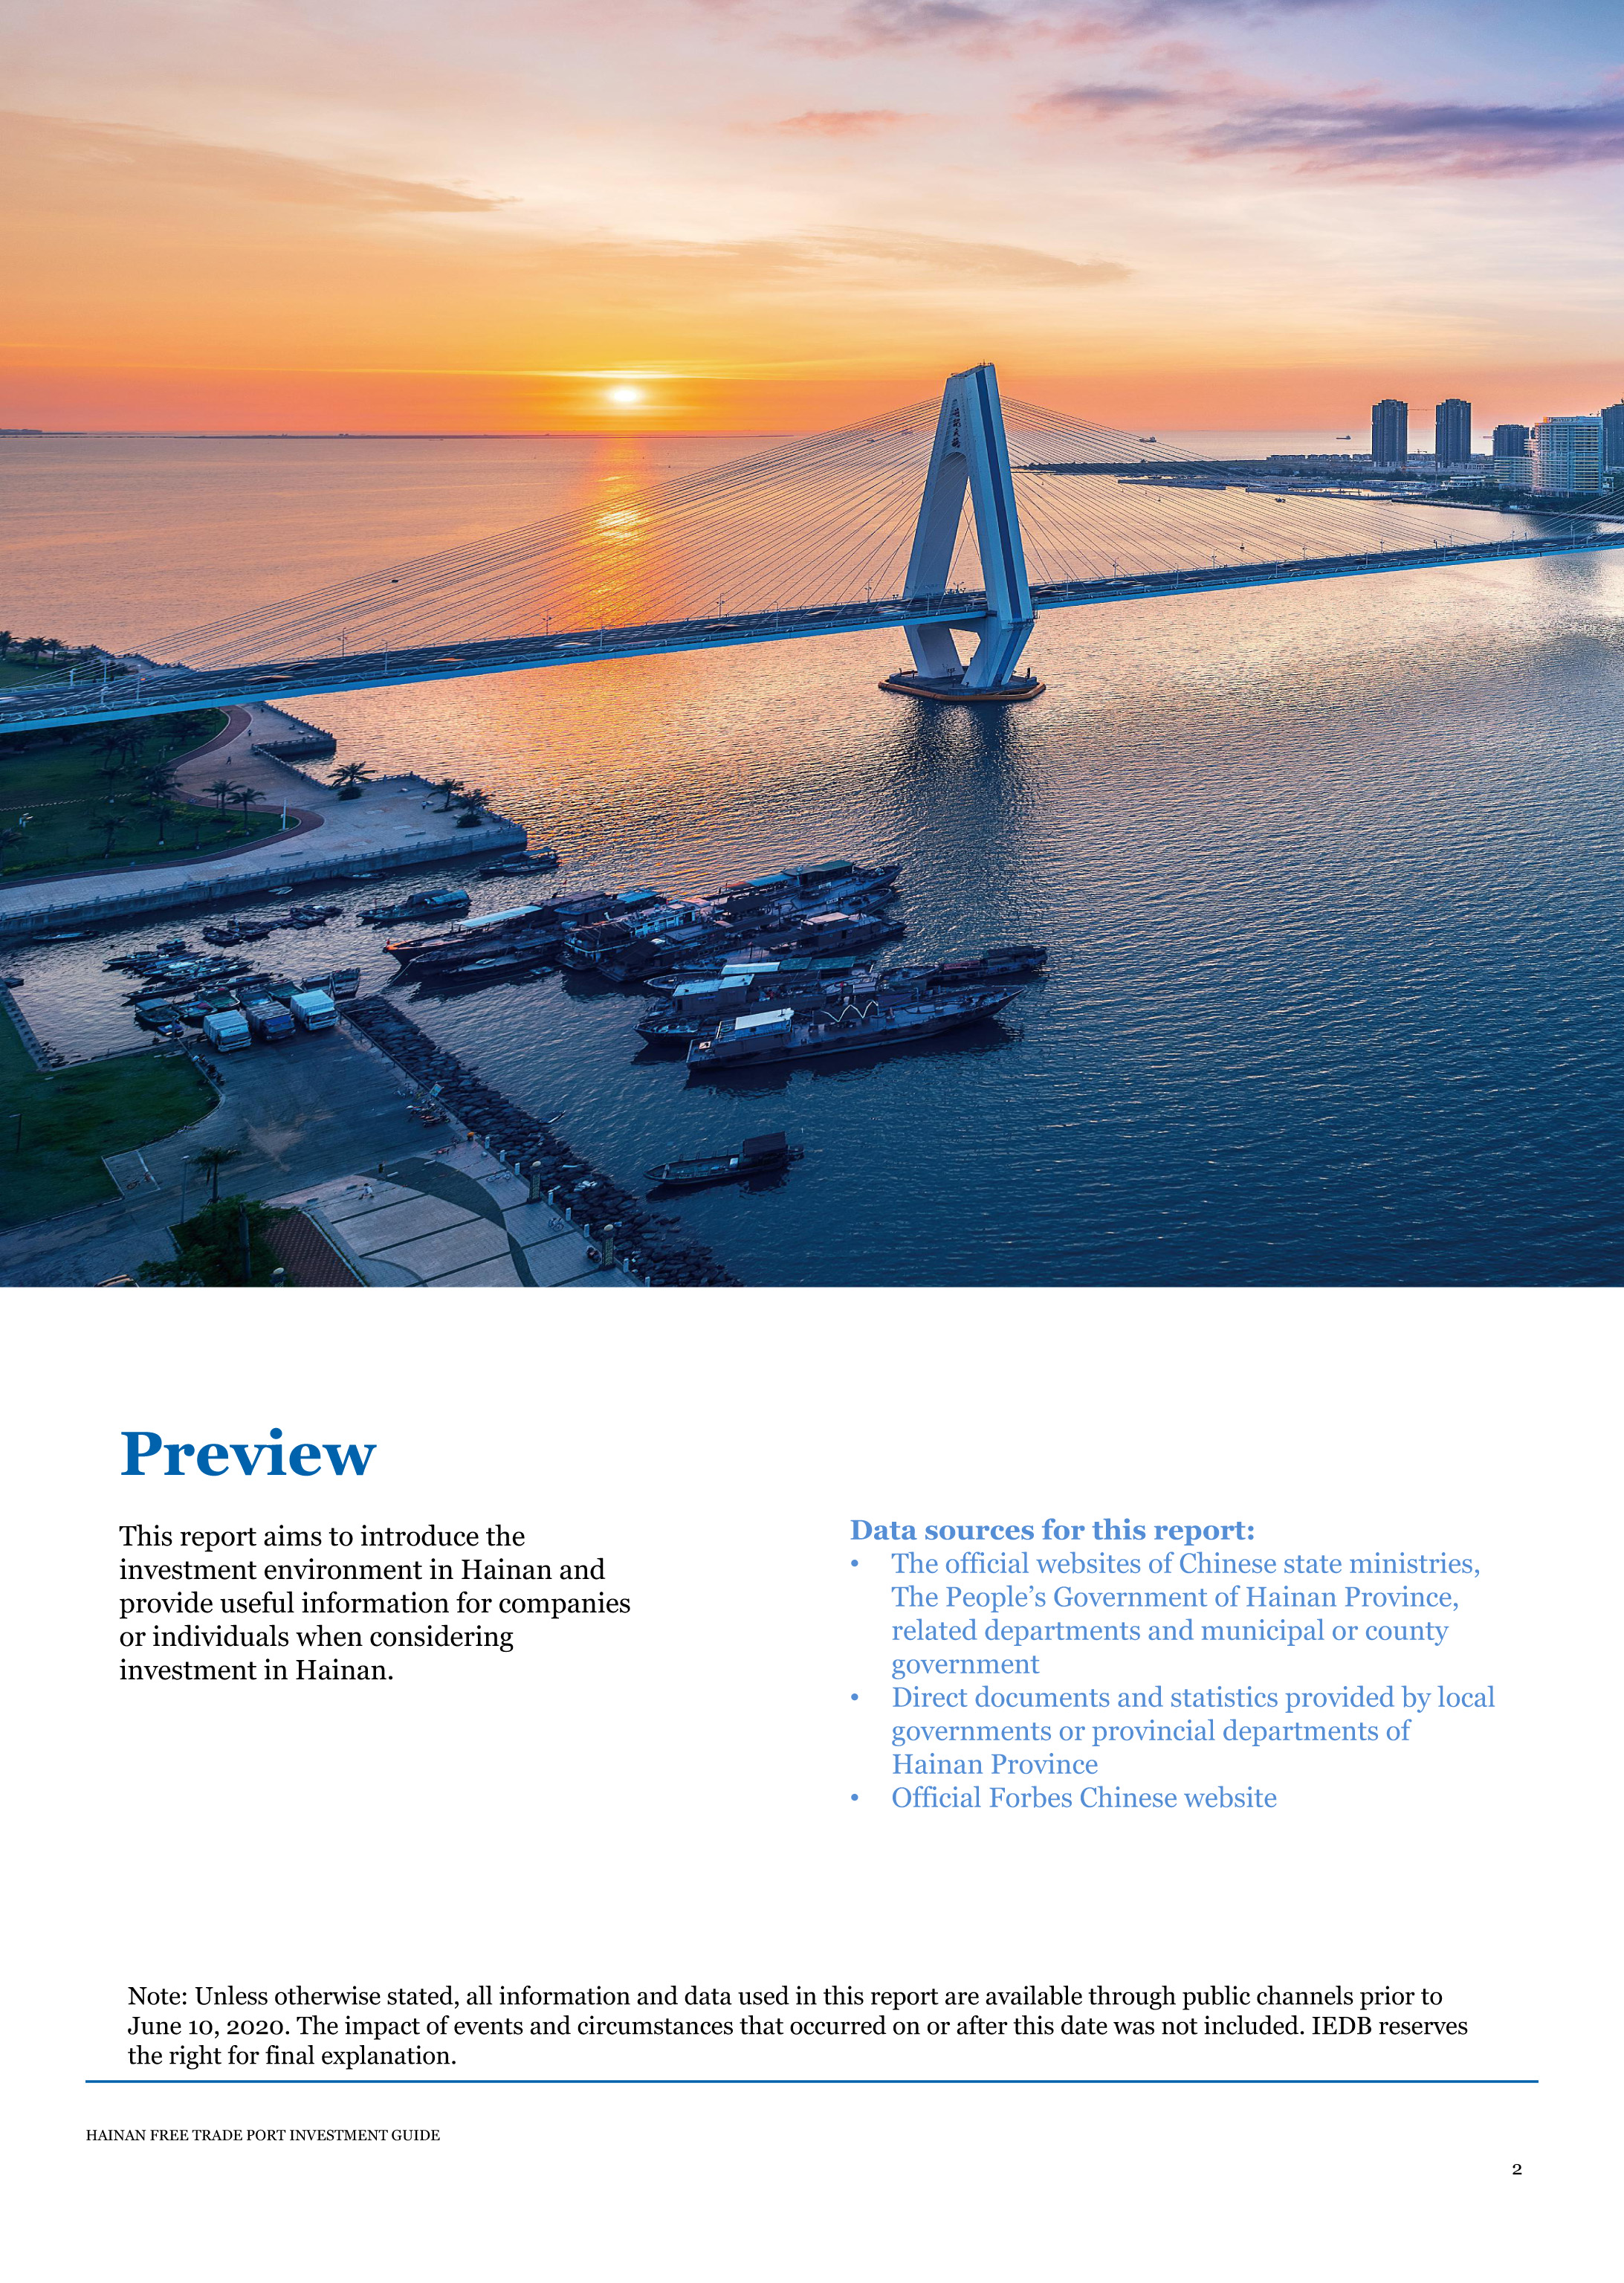 2020海南自由贸易港投资指南—EN-4.jpg